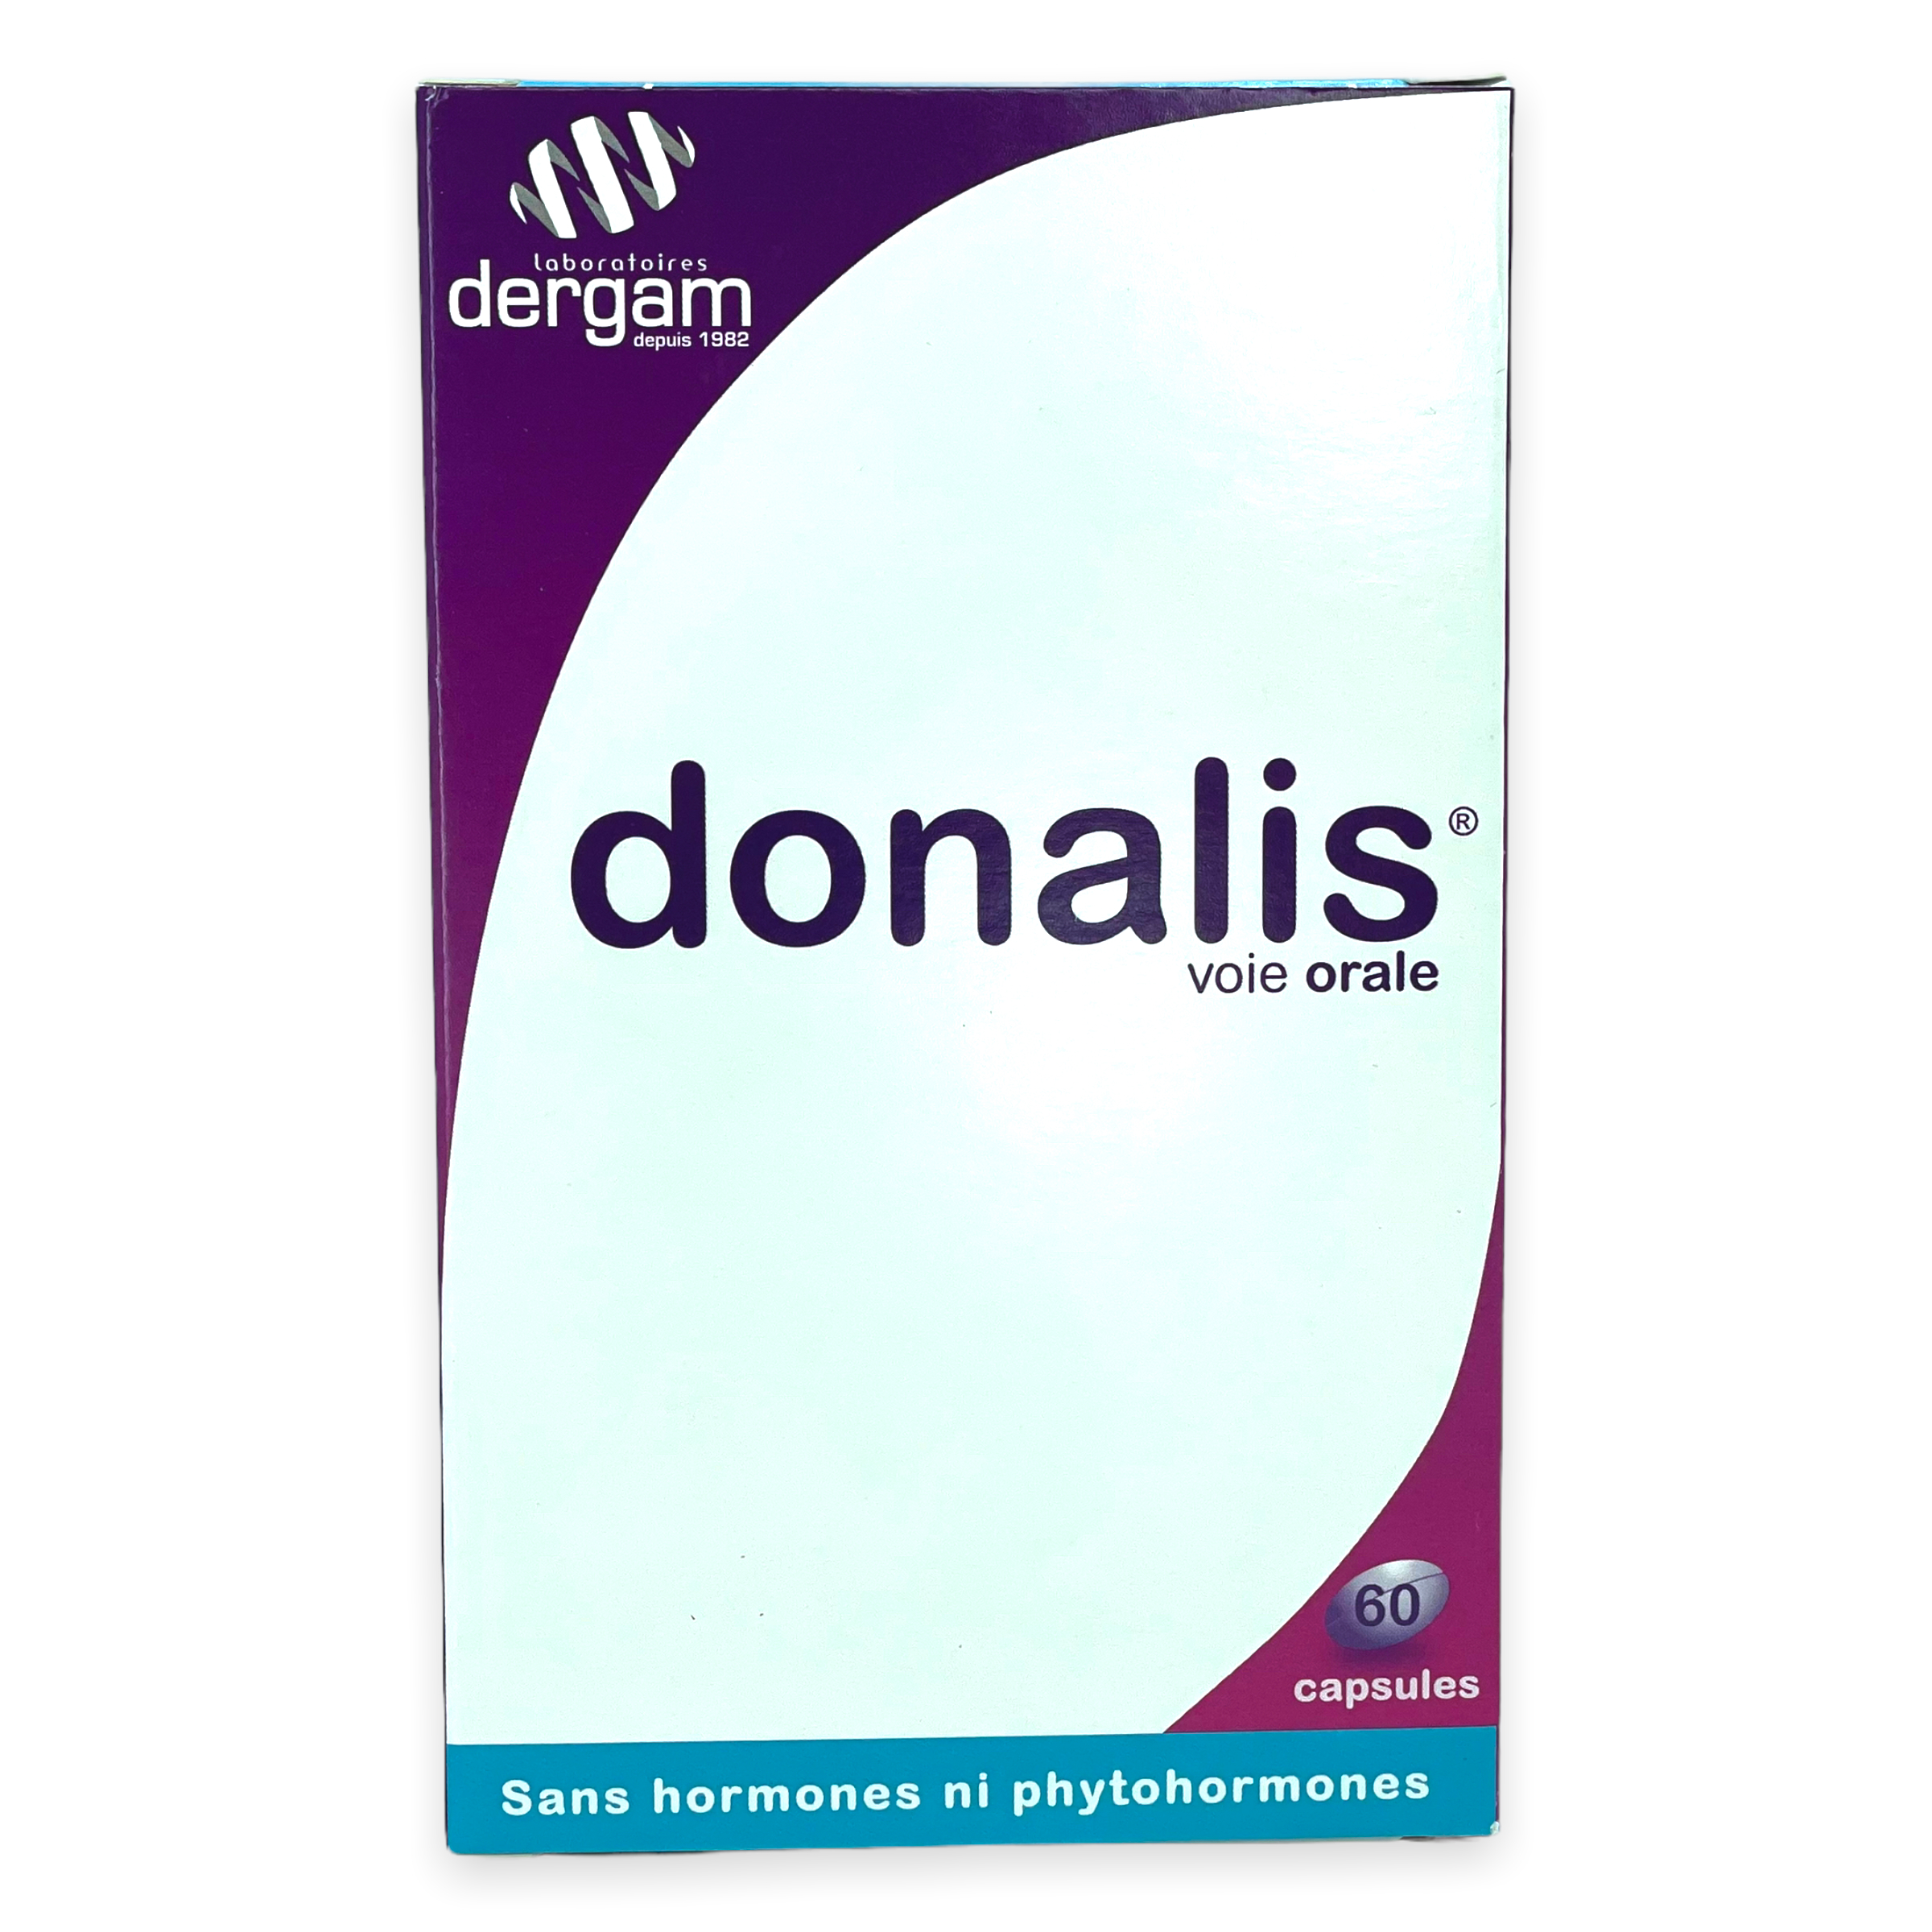 Donalis - Laboratoires Dergam